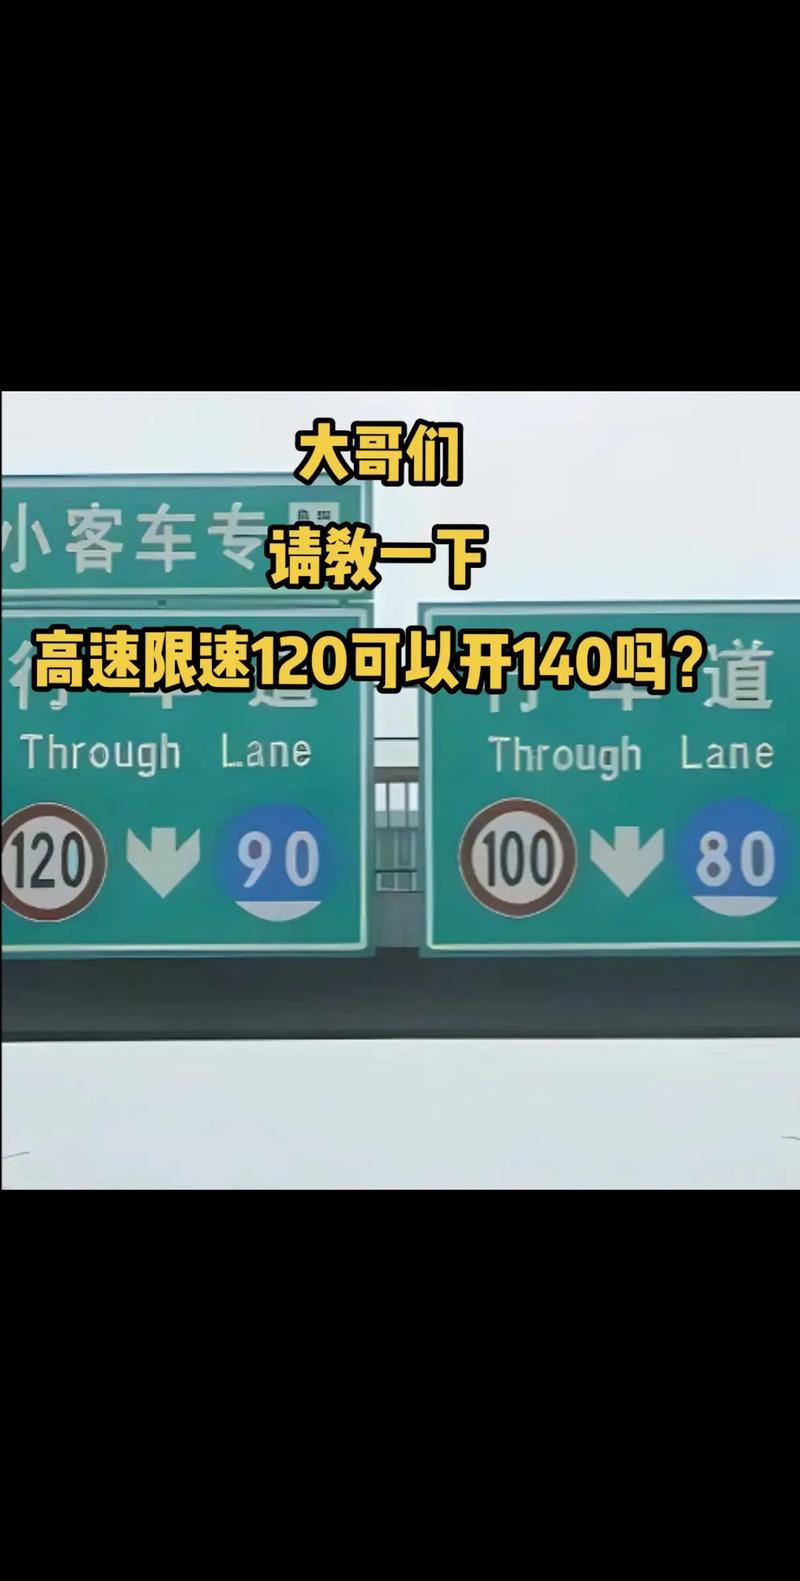 高速为什么要限速120 高速为什么要限速80